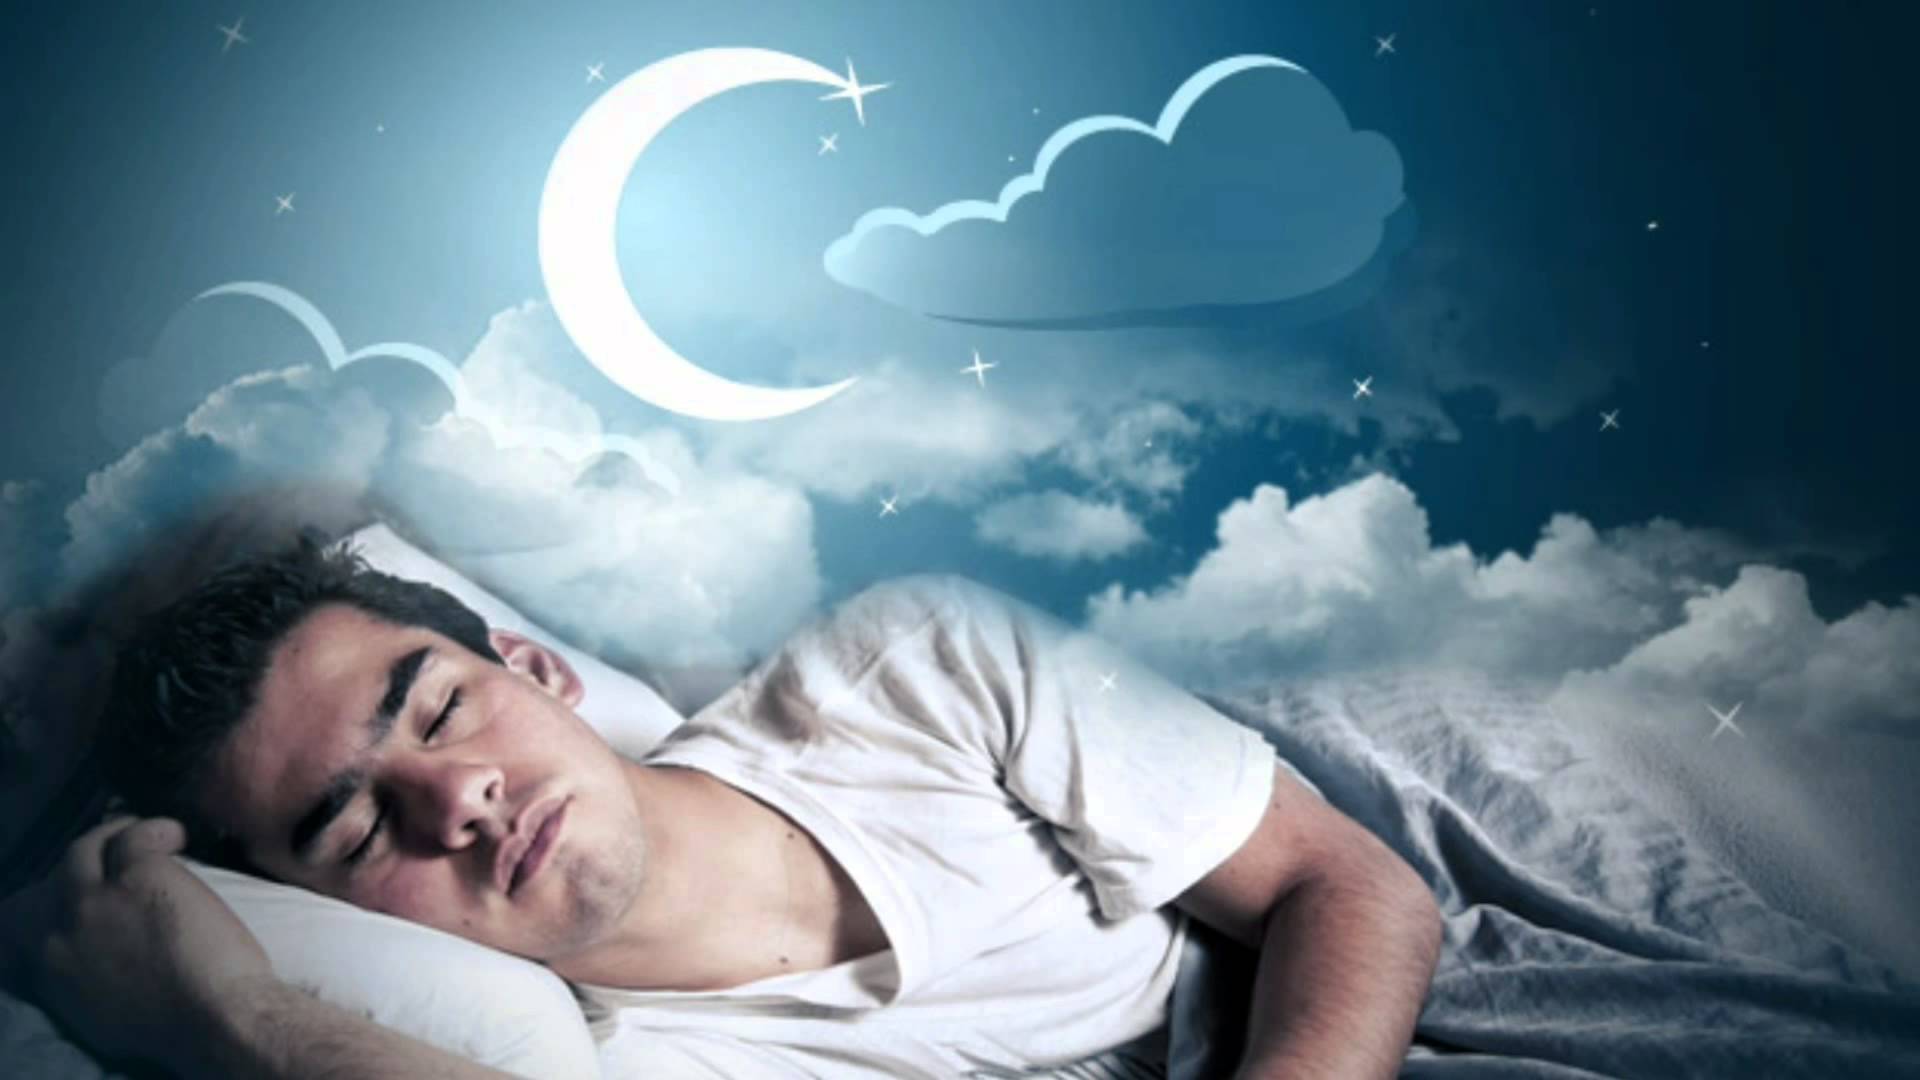 Истории на ночь для сна. Спящий человек. Сны и сновидения. Человек который снится во снах. Спящий человек ночью.